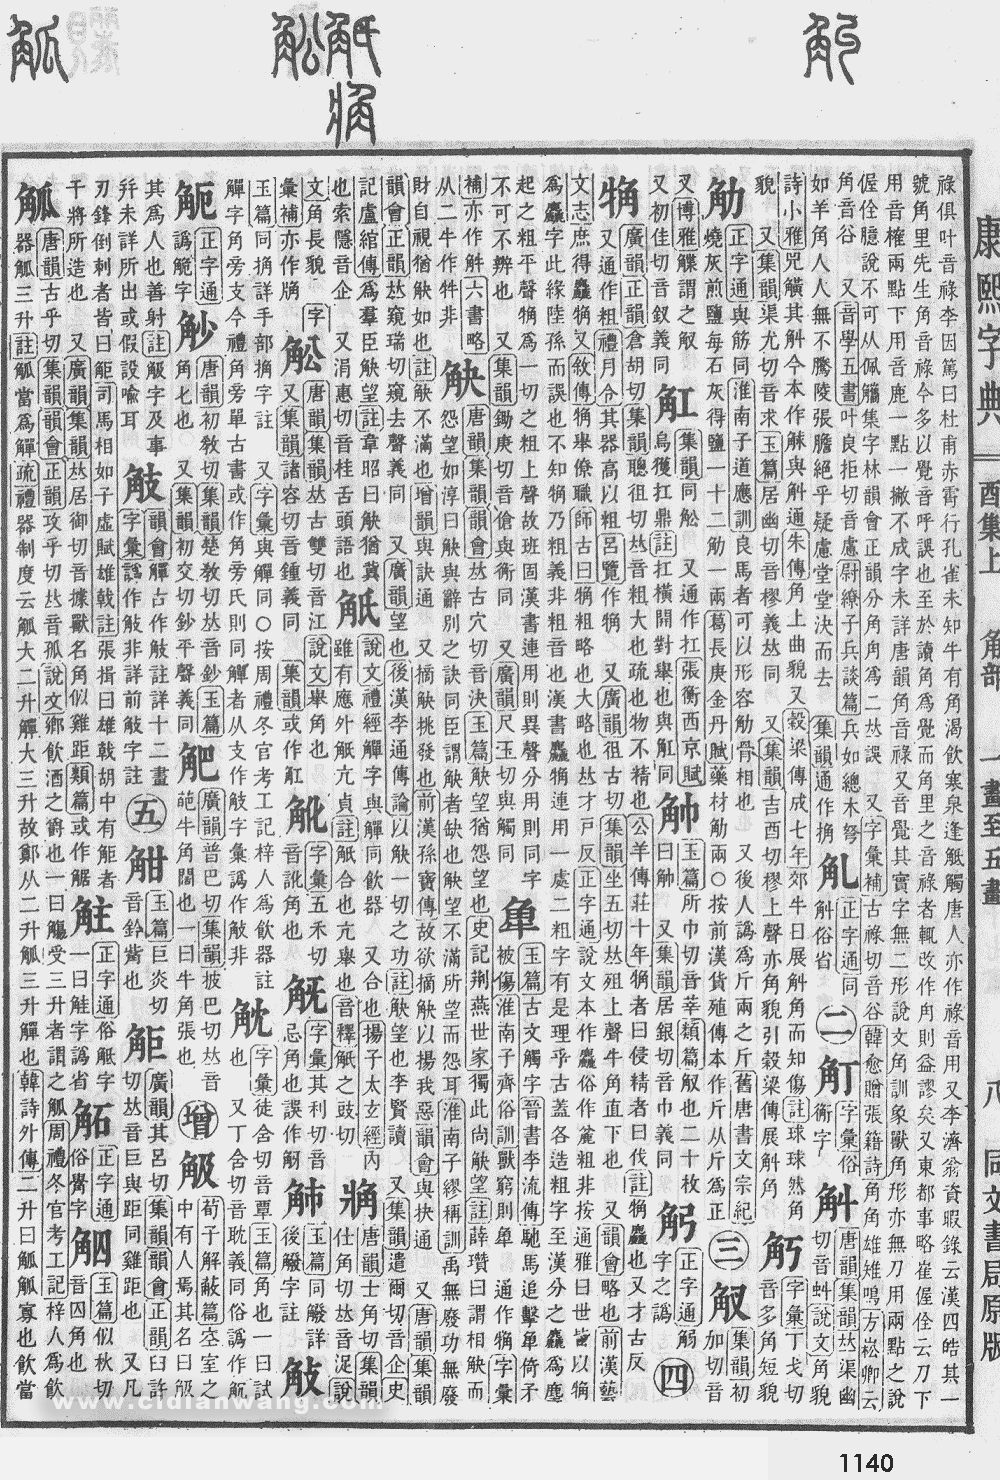 康熙字典掃描版第1140頁